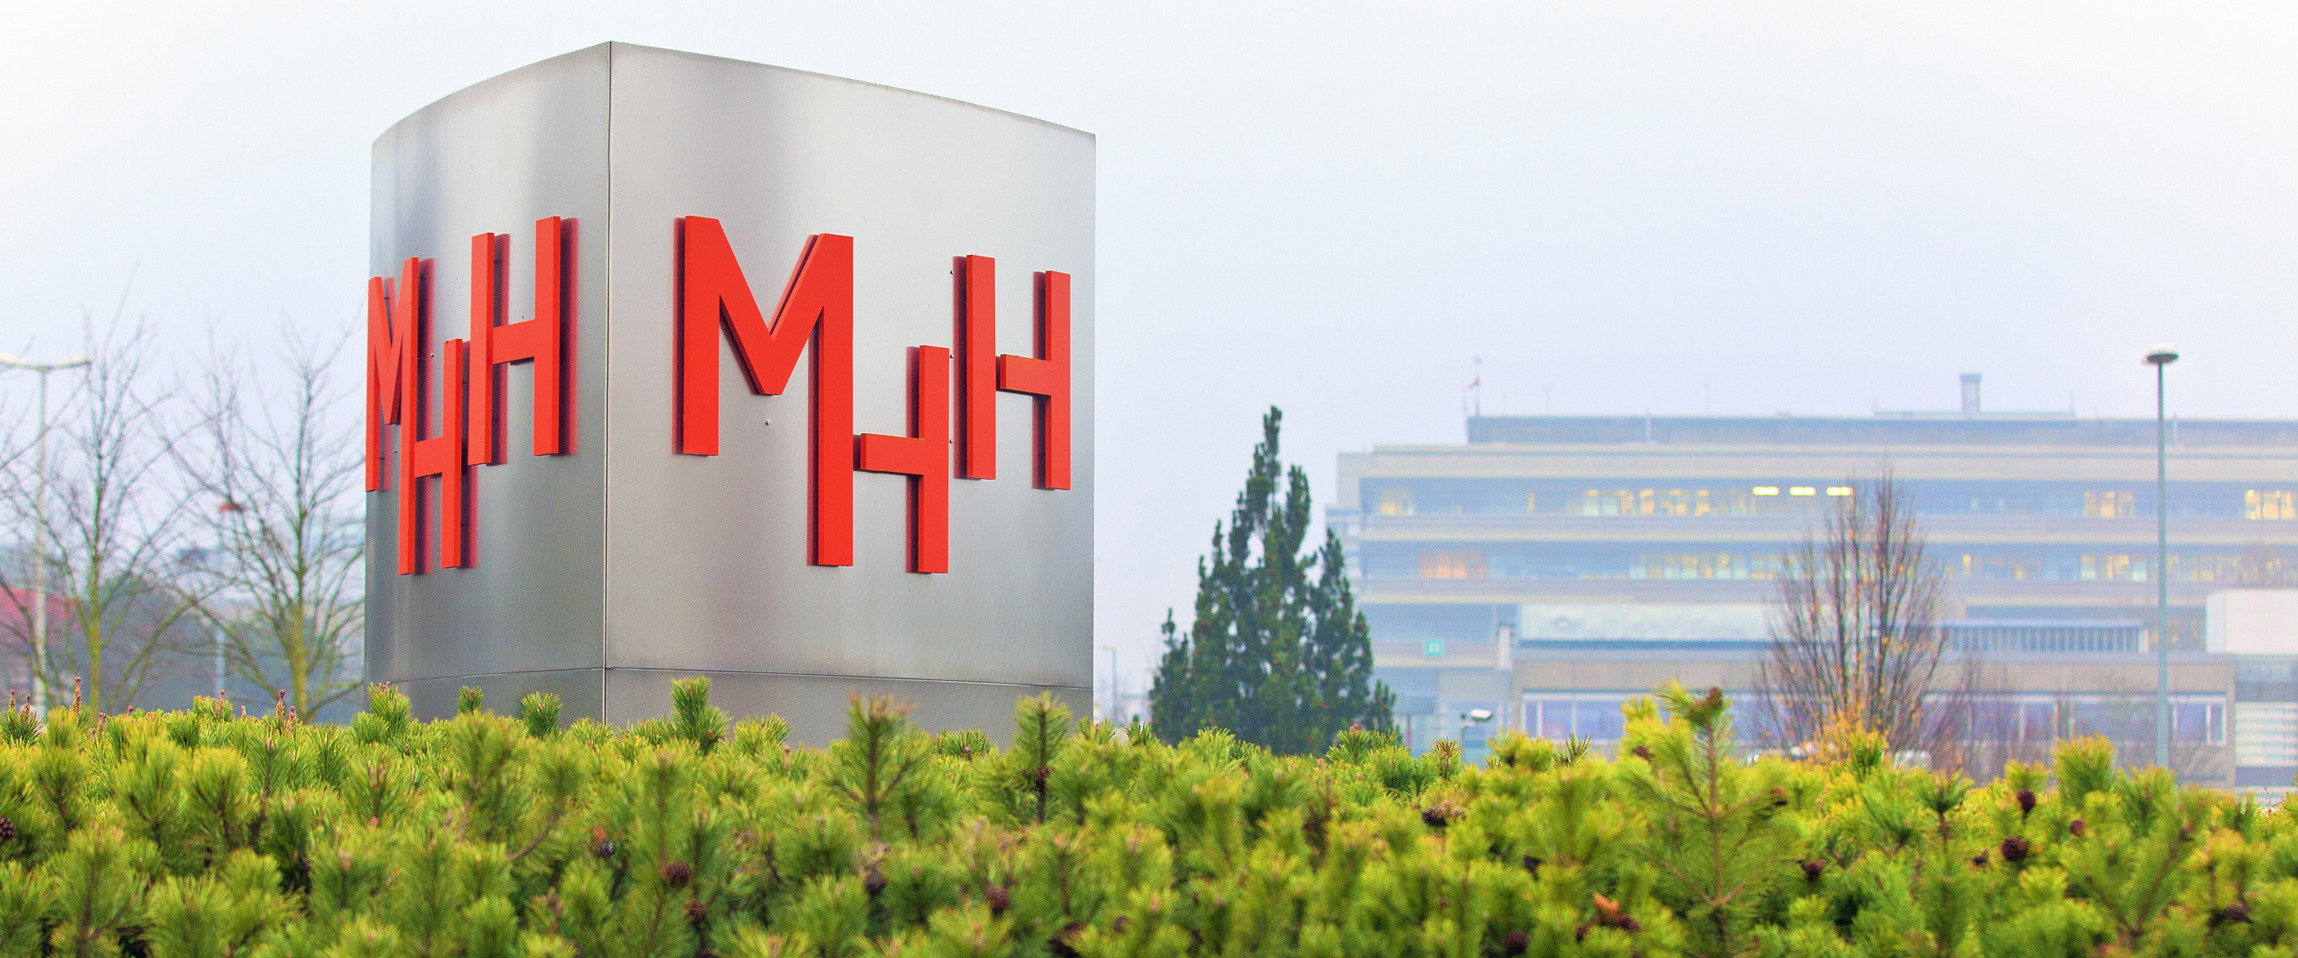 Eine große silberne Stele trägt das Logo der Medizinischen Hochschule Hannover - MHH.